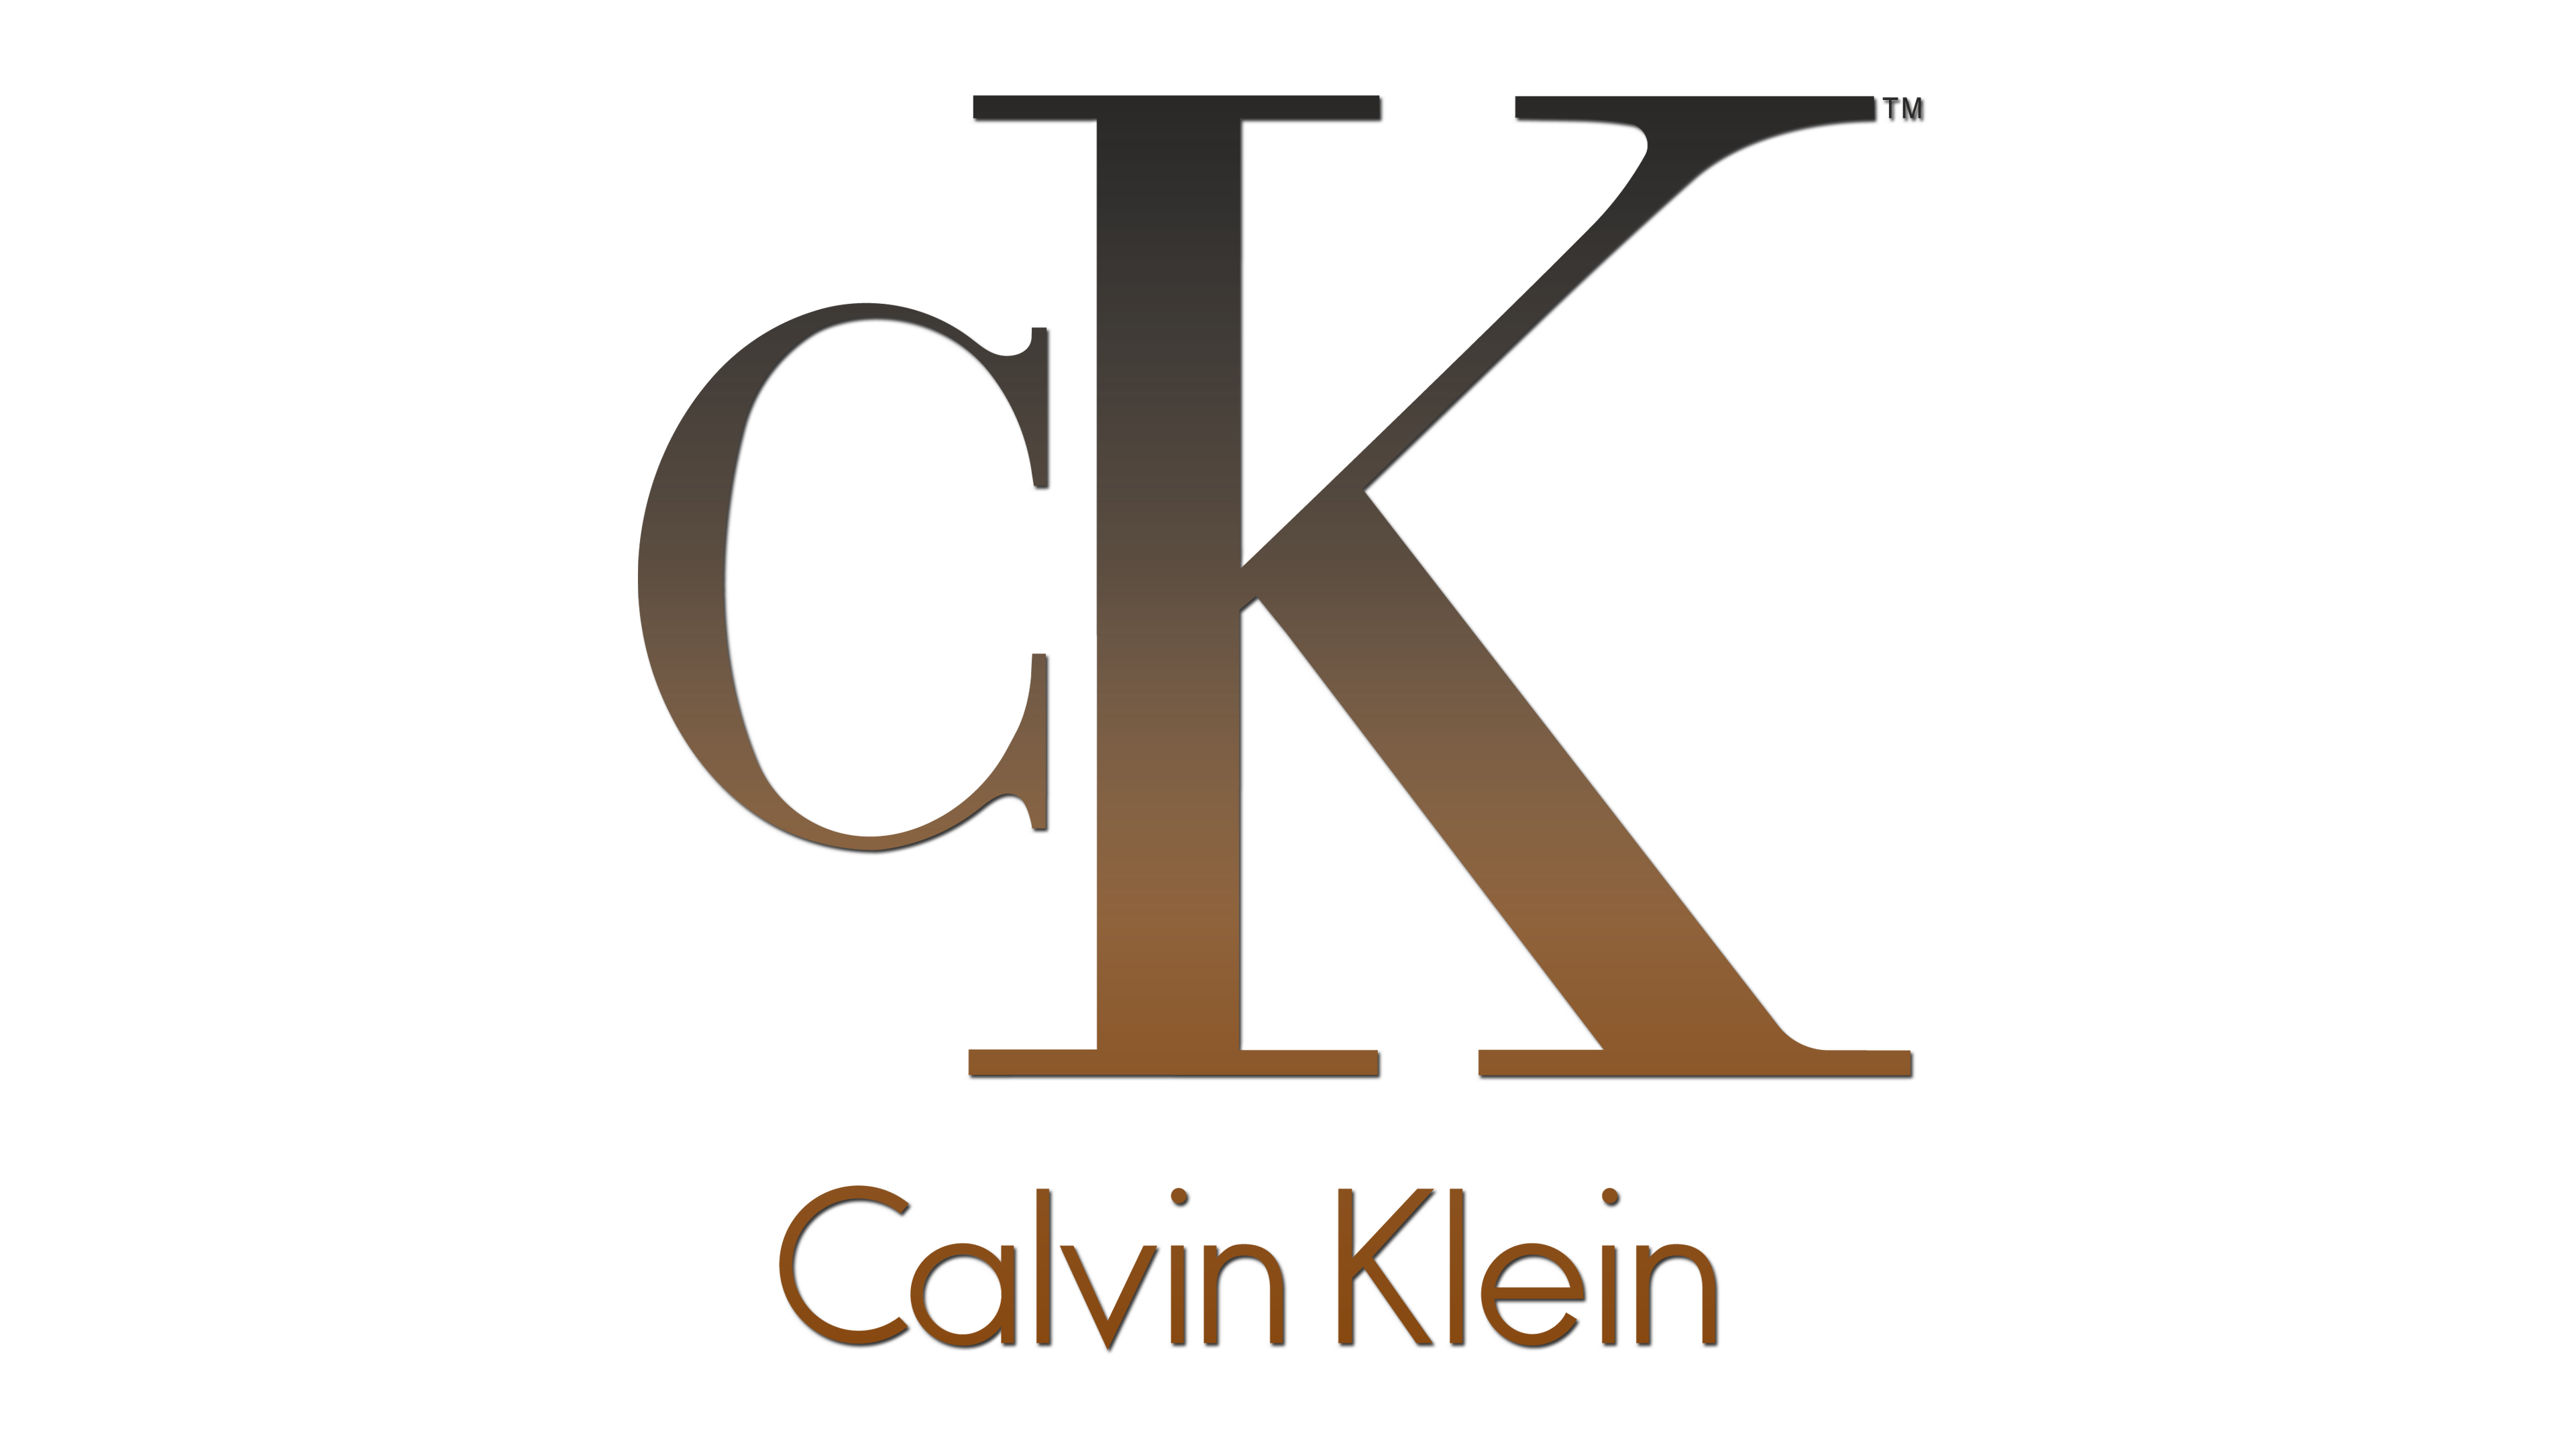 Ck calvin klein logo PNG Bild Herunterladen